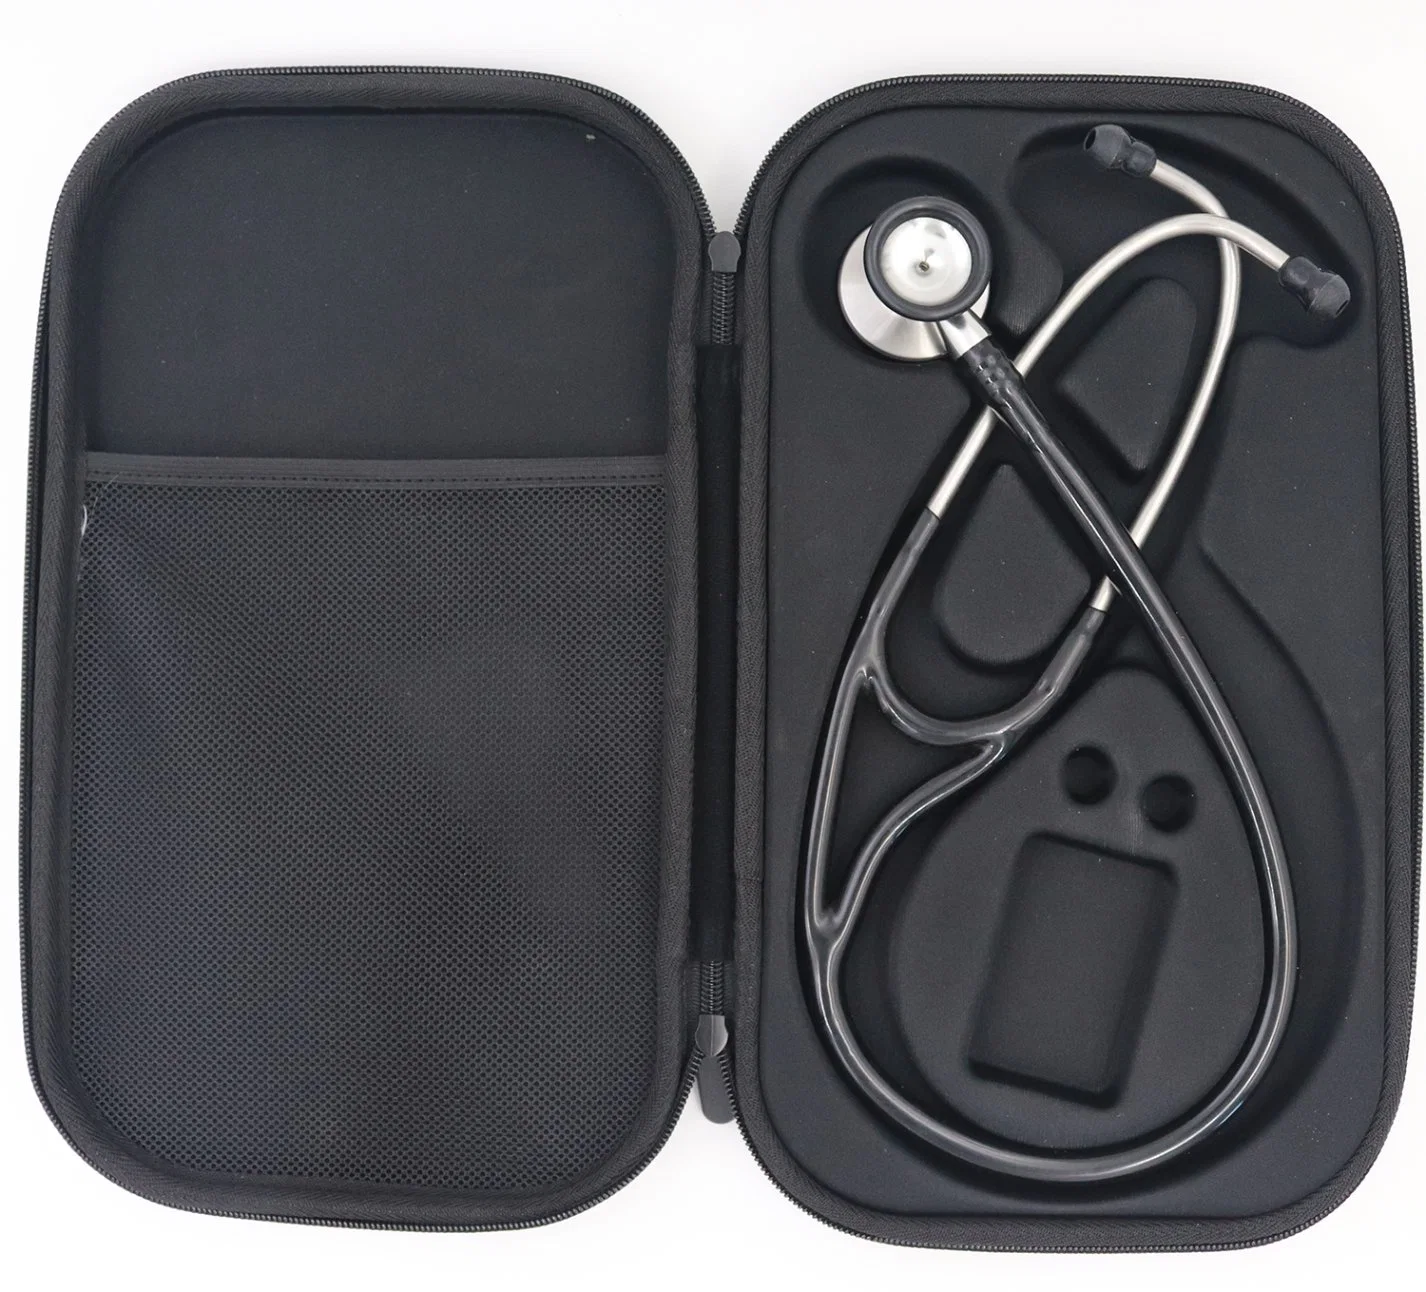 Accessoires universels médicale de voyage en cuir Fermeture à glissière transportant la boîte de rangement étanche portable EVA infirmière pour tous les cas Sac Littmann stéthoscope